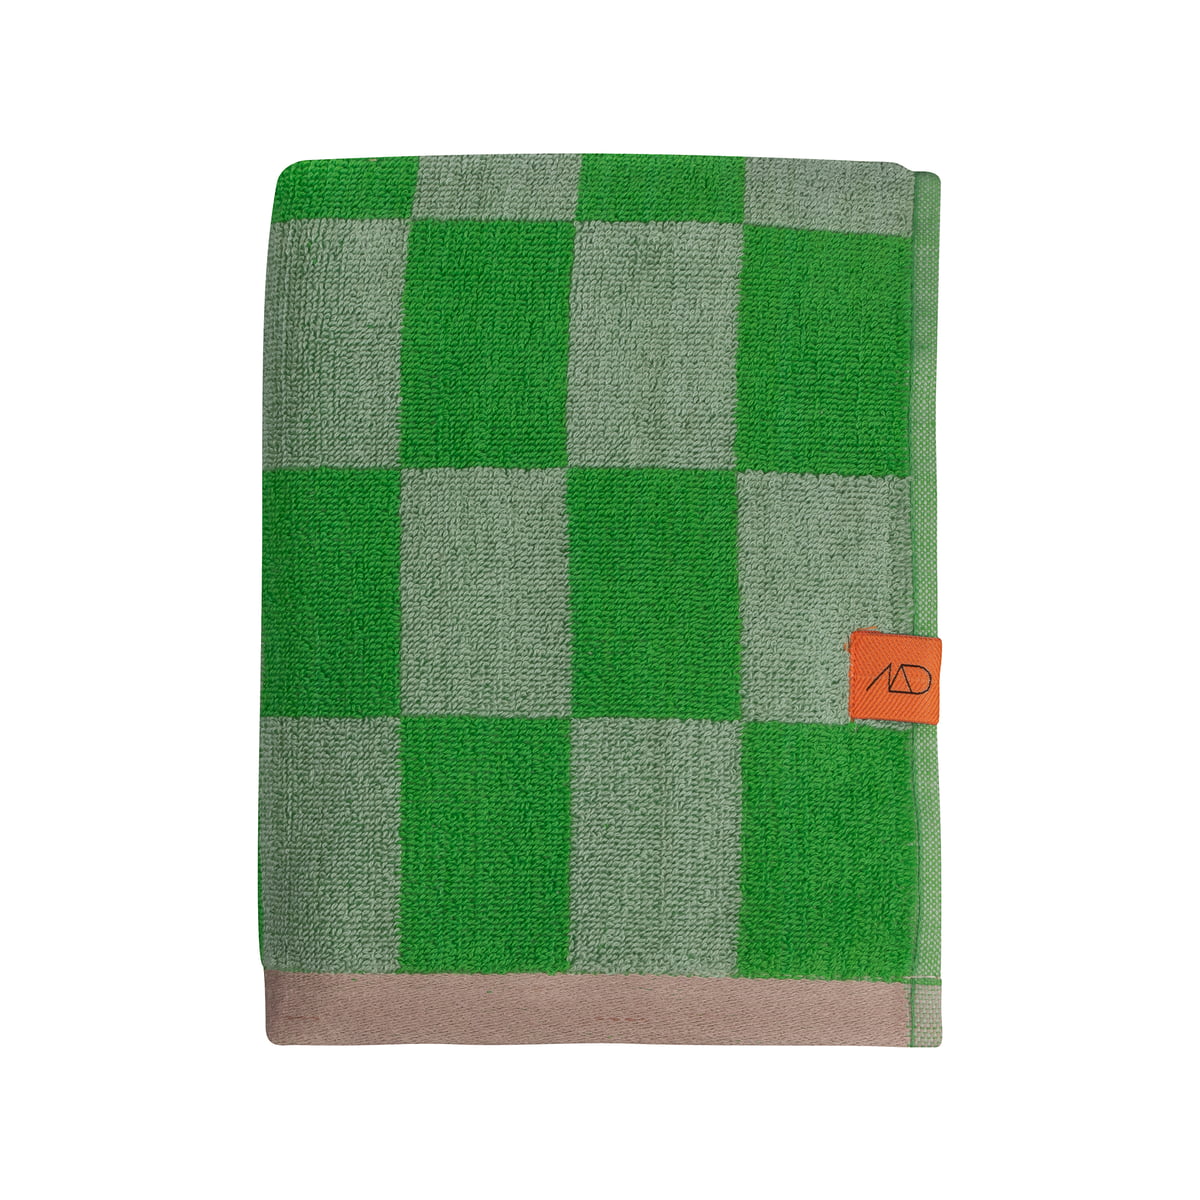 mette ditmer - retro serviette de bain, 50 cm x 90 cm, vert classique